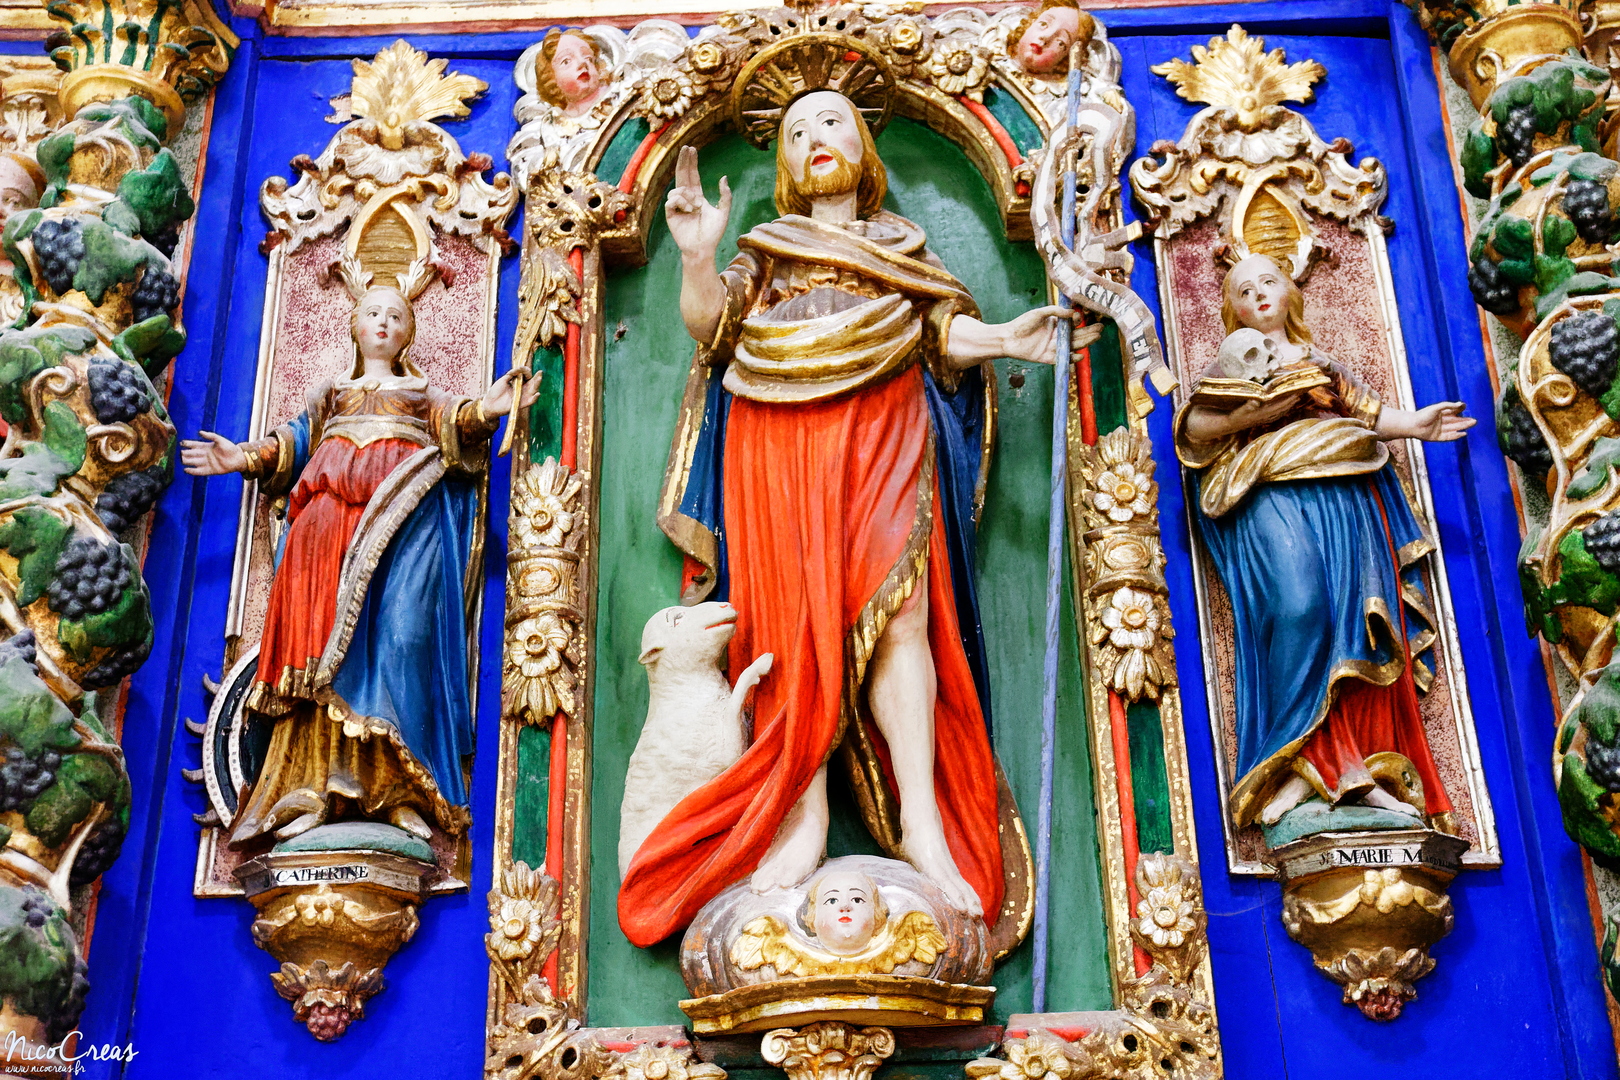 Au centre : Saint Jean-Baptiste
À gauche : Sainte Catherine d'Alexandrie
À droite : Sainte Marie-Madeleine